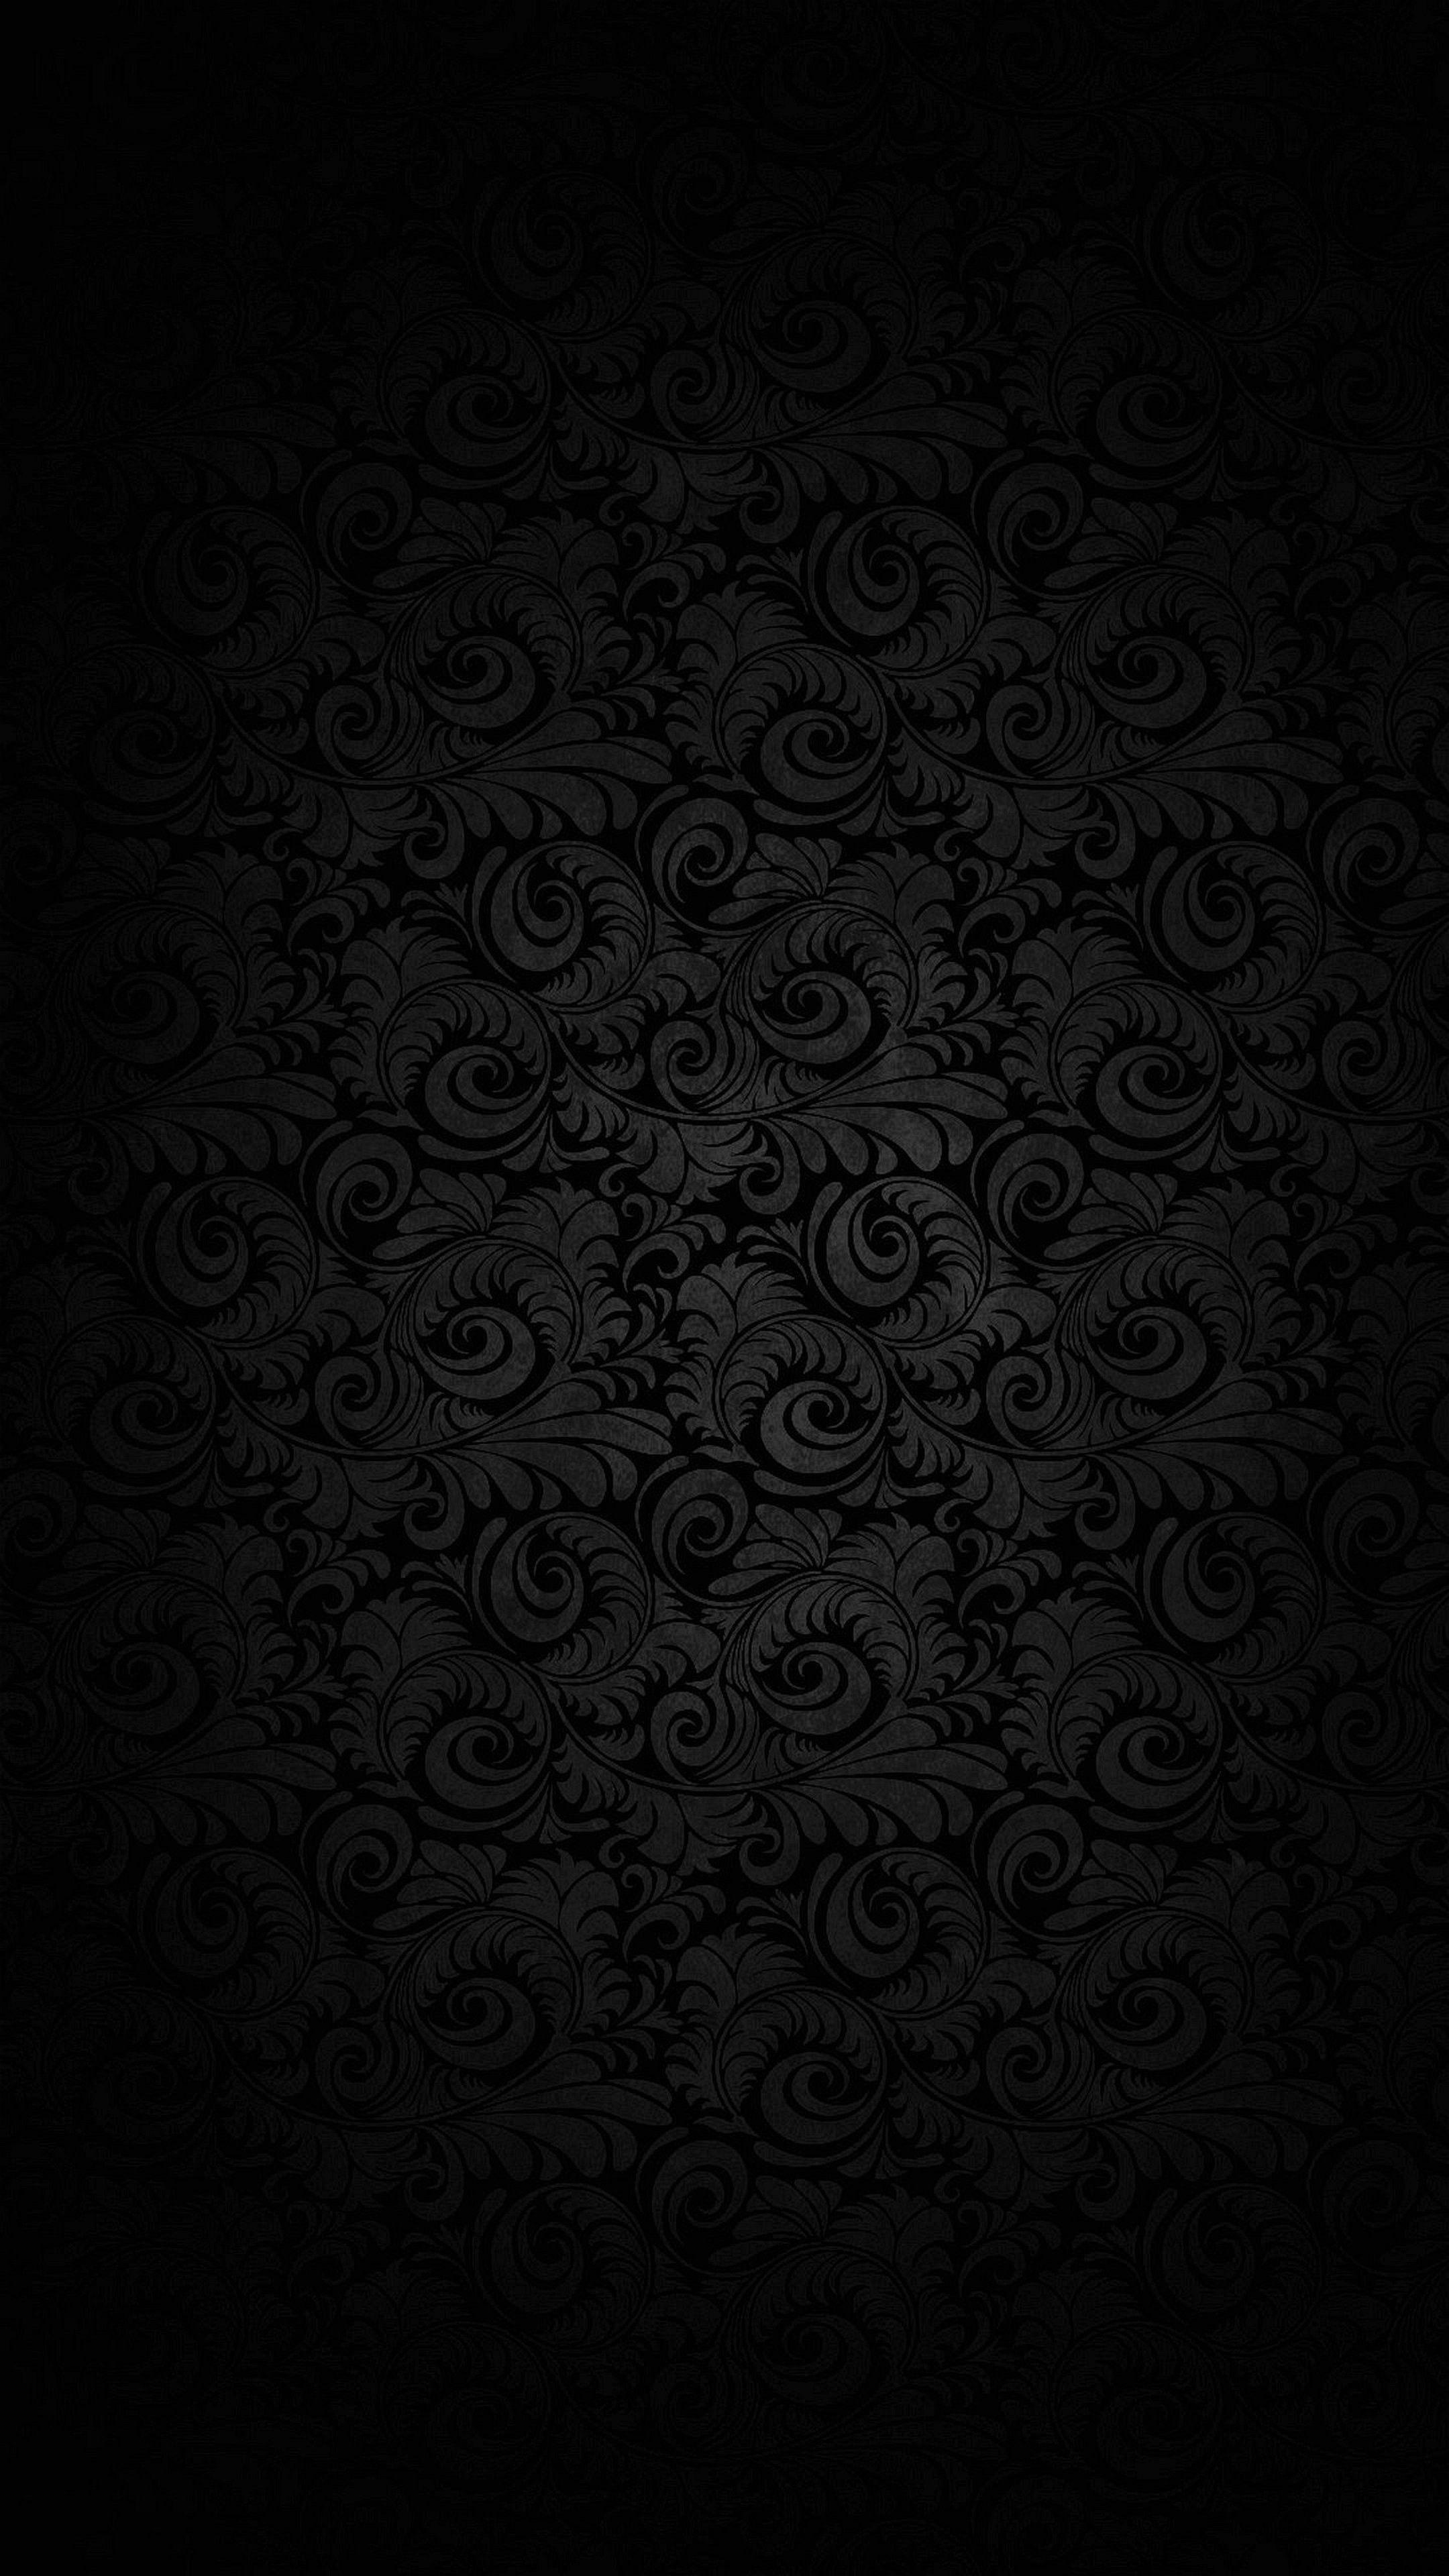 Samsung Black Wallpapers: Hình ảnh của những chiếc điện thoại Samsung được trang trí bằng các hình nền đen đầy ấn tượng sẽ khiến bạn phải trầm trồ. Góp mặt trong những bộ sưu tập ảnh nền đẹp nhất, các hình nền Samsung Black Wallpapers chắc chắn là điểm nhấn cho bất kỳ chiếc điện thoại nào.